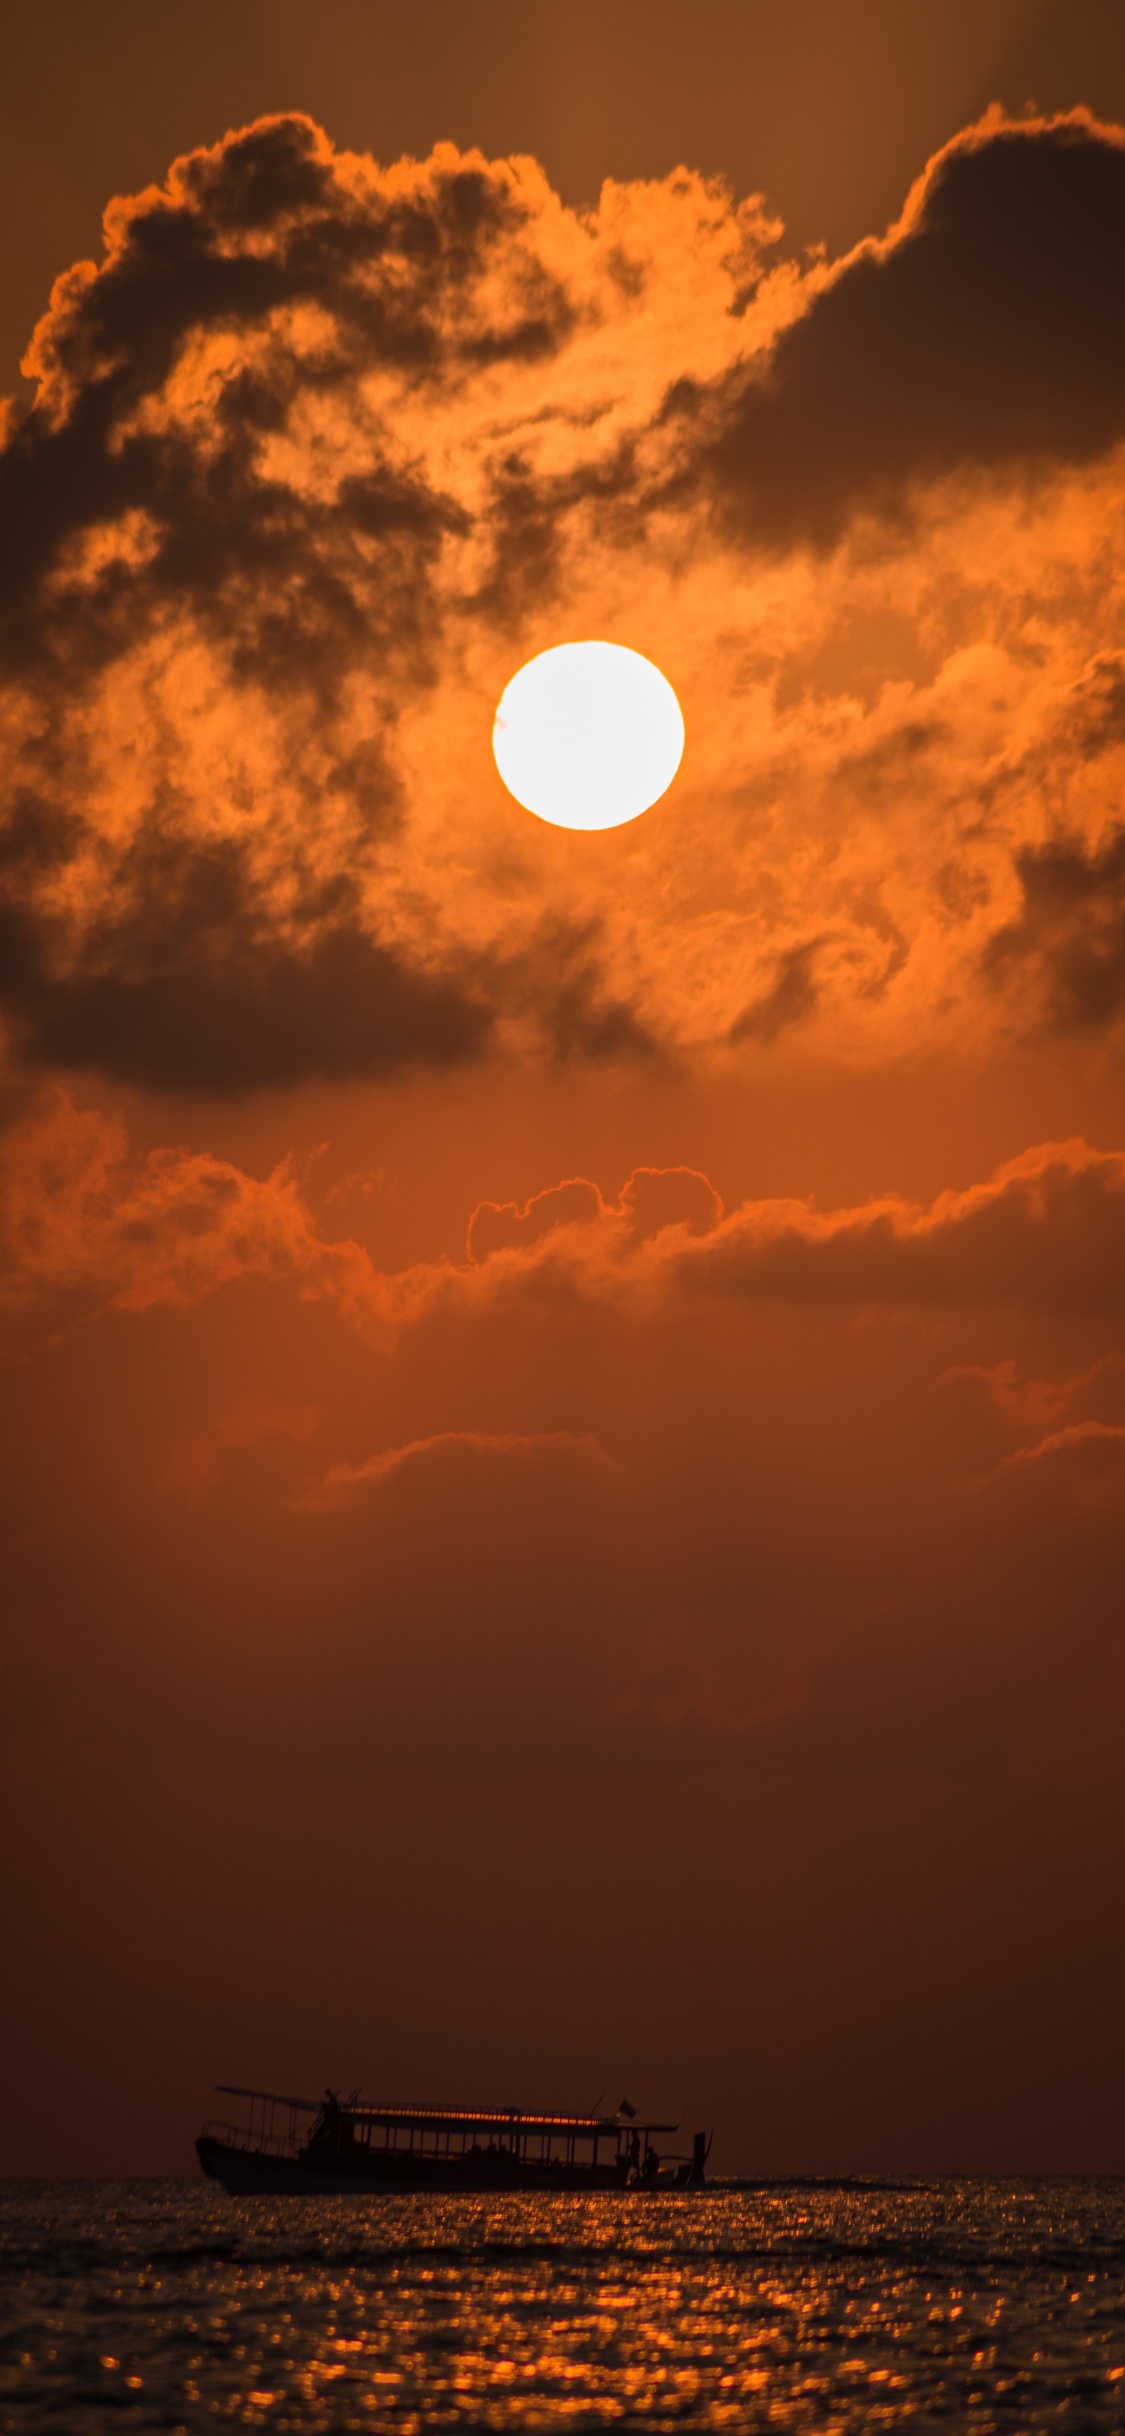 Sonnenuntergang, Afterglow, Sonne, Cloud, Orange. Wallpaper in 1125x2436 Resolution